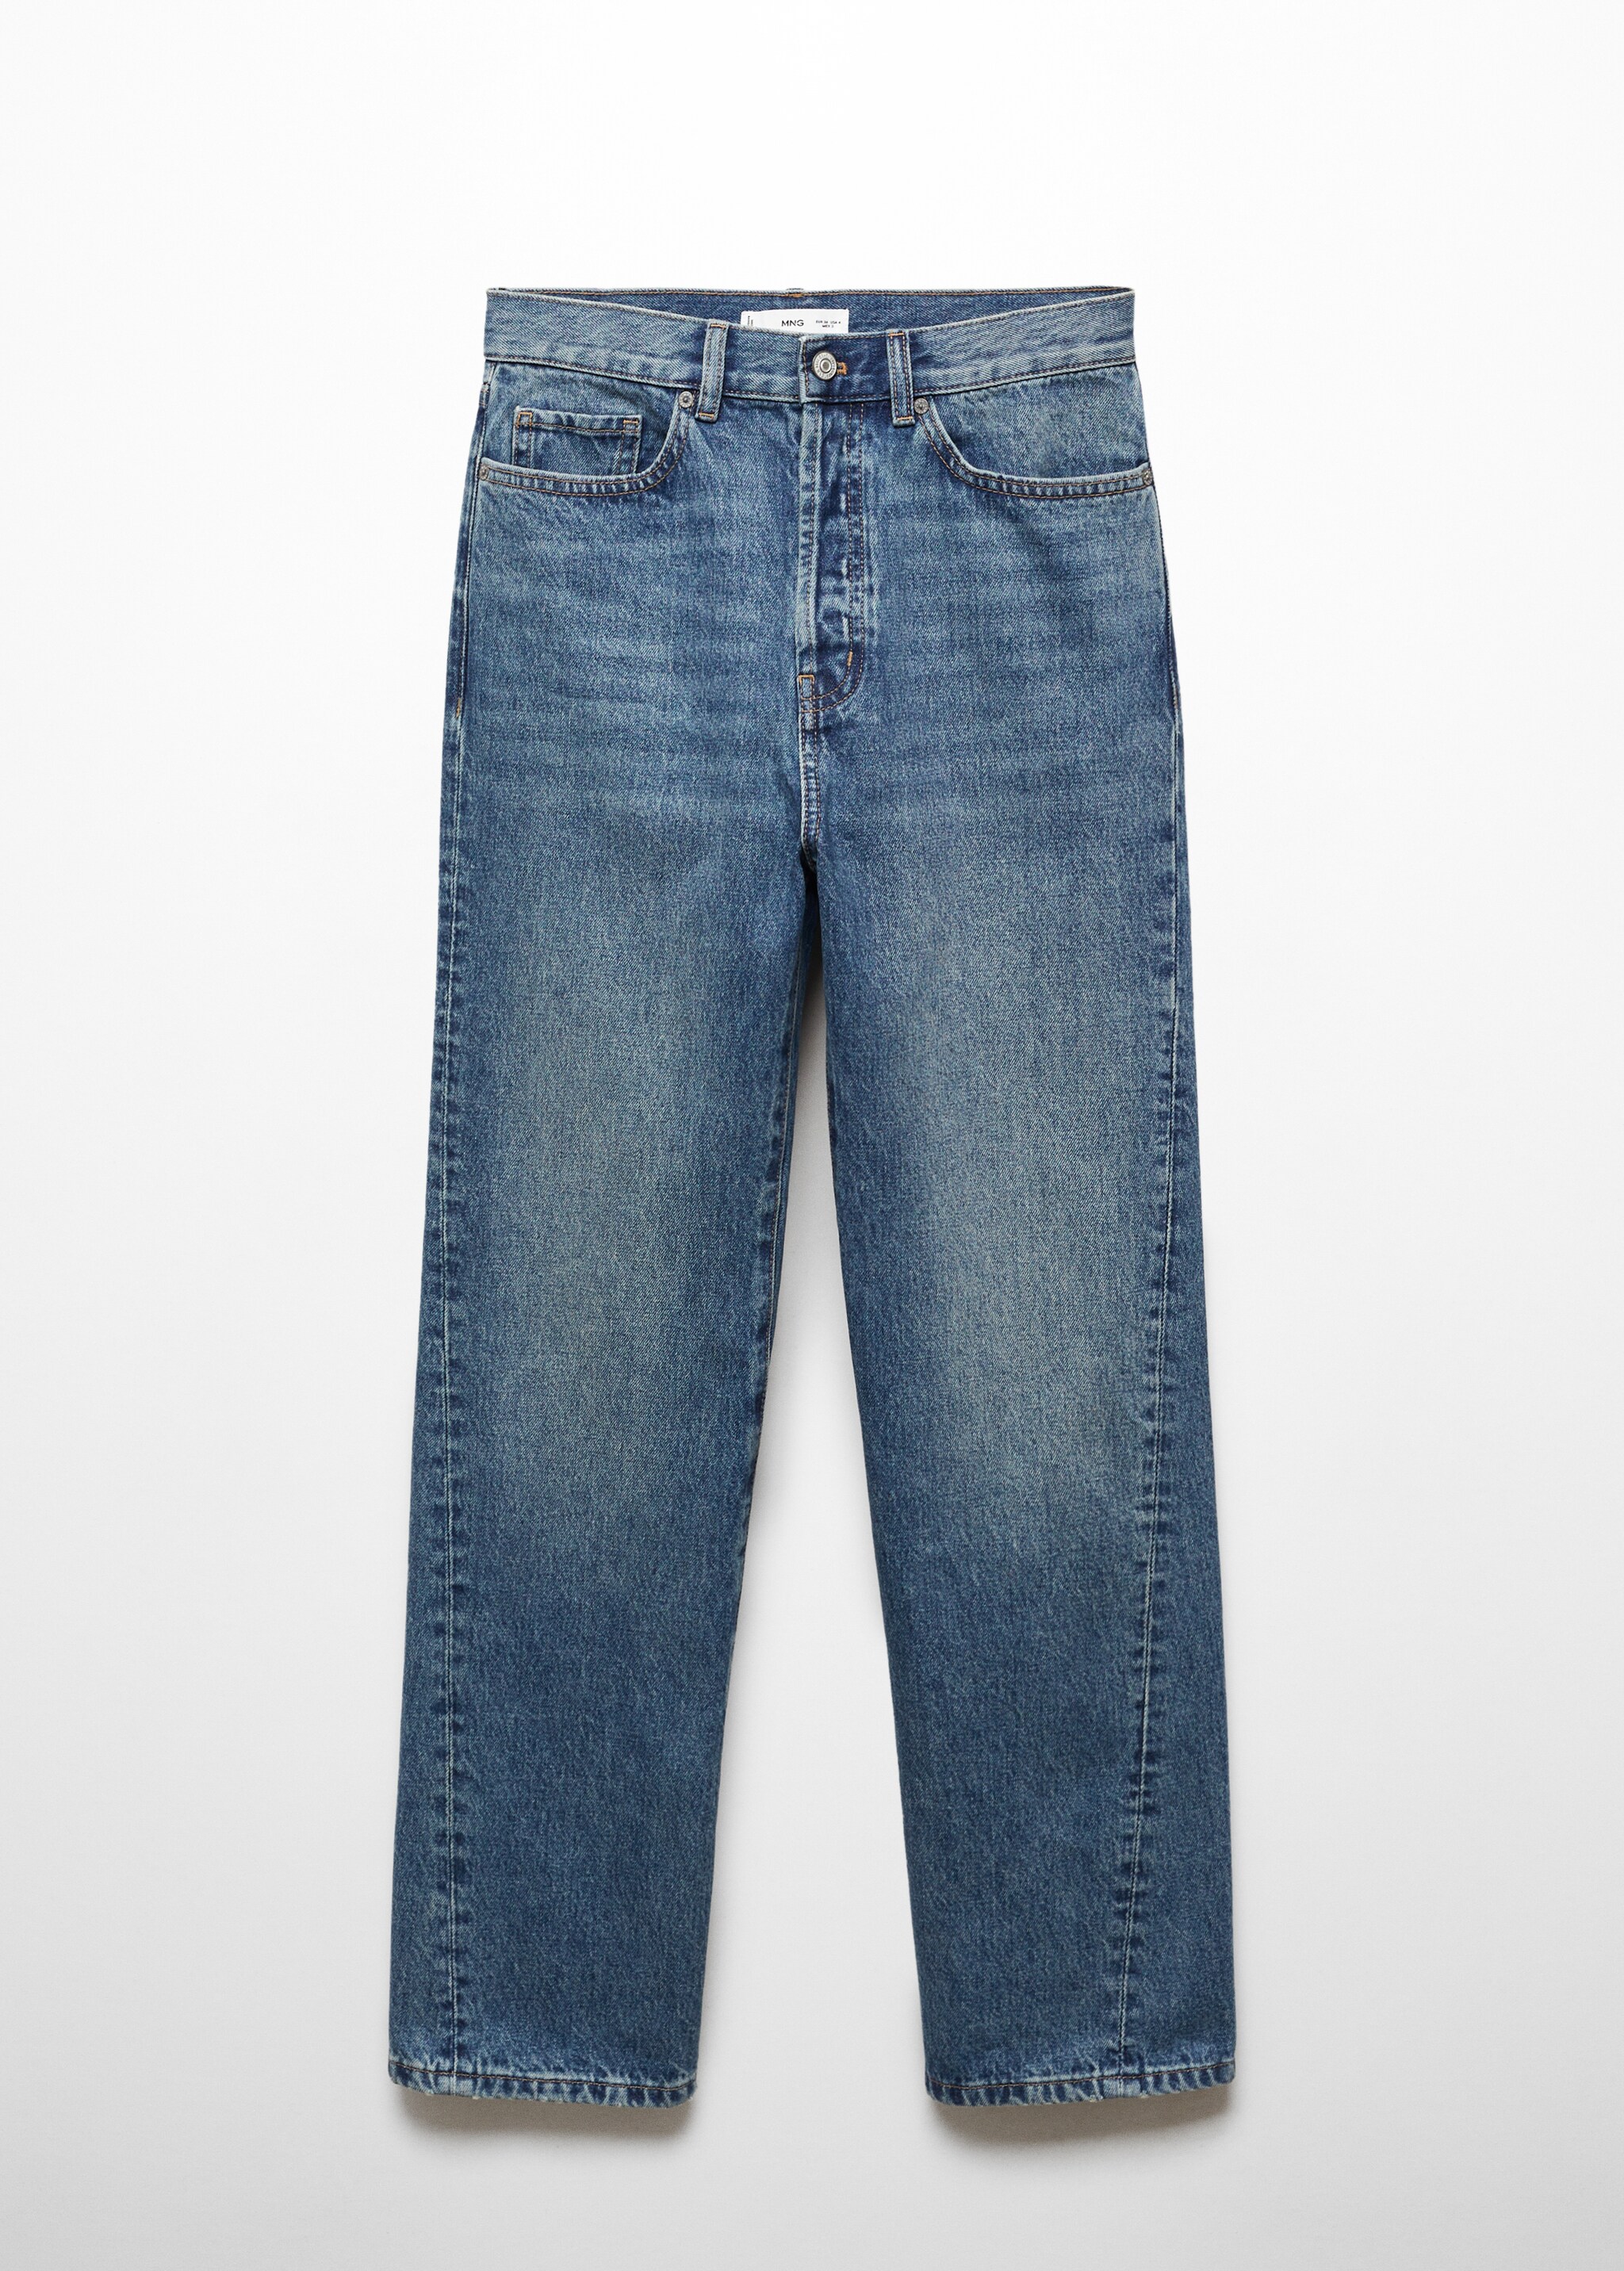 Jeans rectos costuras adelantadas - Artículo sin modelo